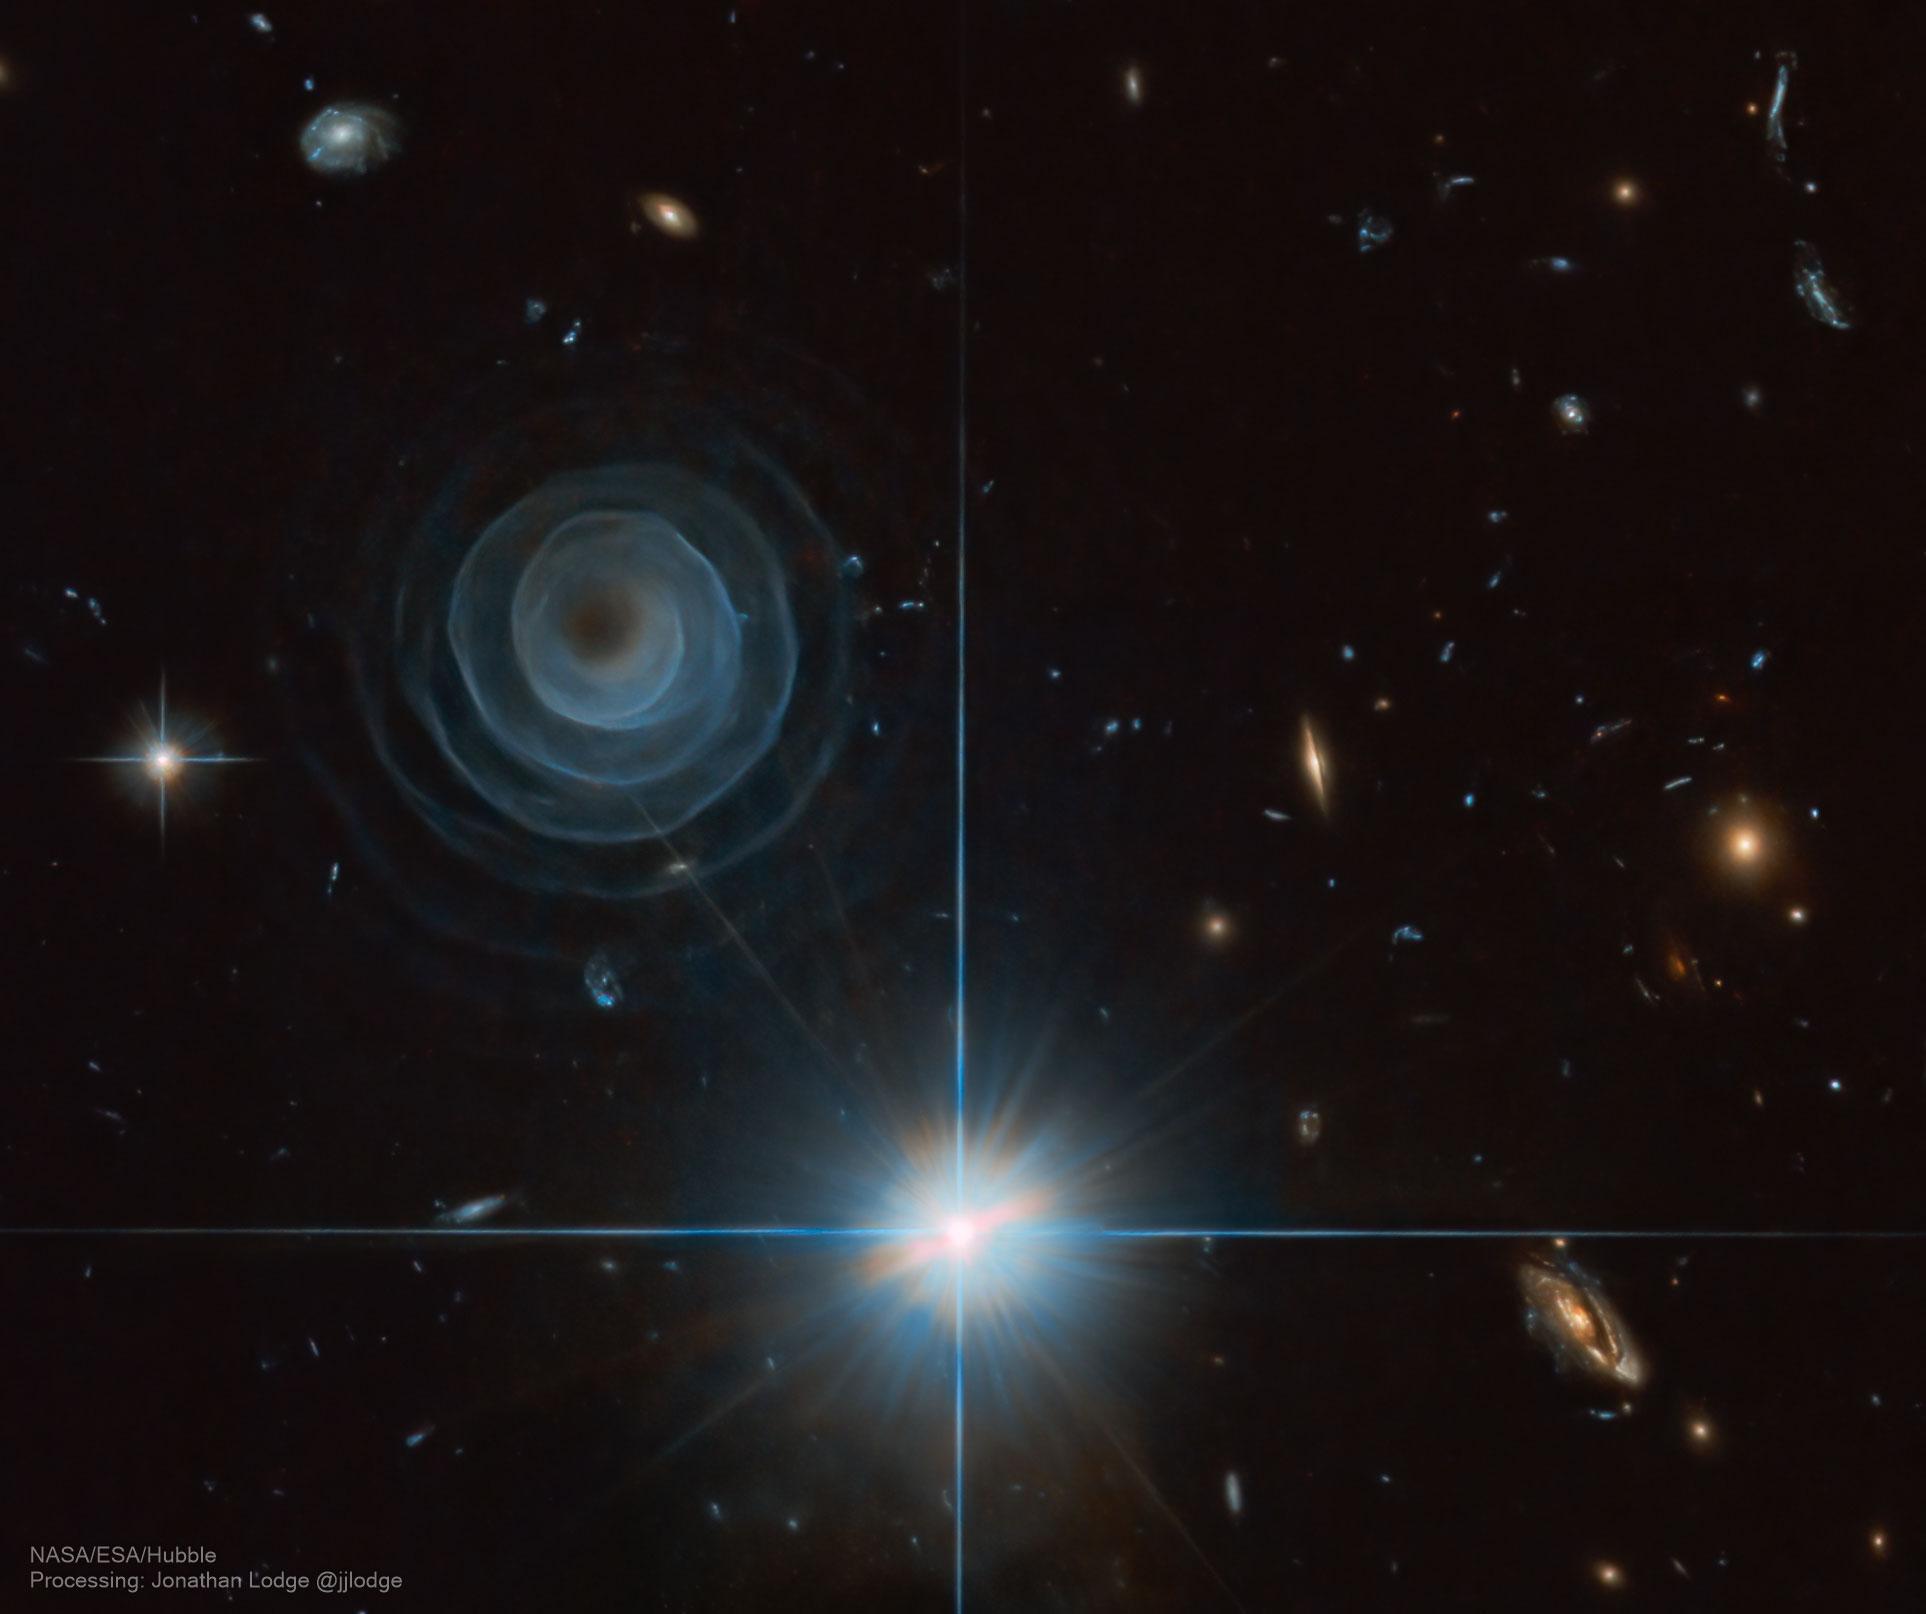 صورة للفضاء العميق تظهر بنية لولبية كطبقات متراكبة حول مركز، حيث تصبح أكثر شفافية باتّجاه الخارج، مع ظهور العديد من النجوم إضافة لمجرات الخلقية